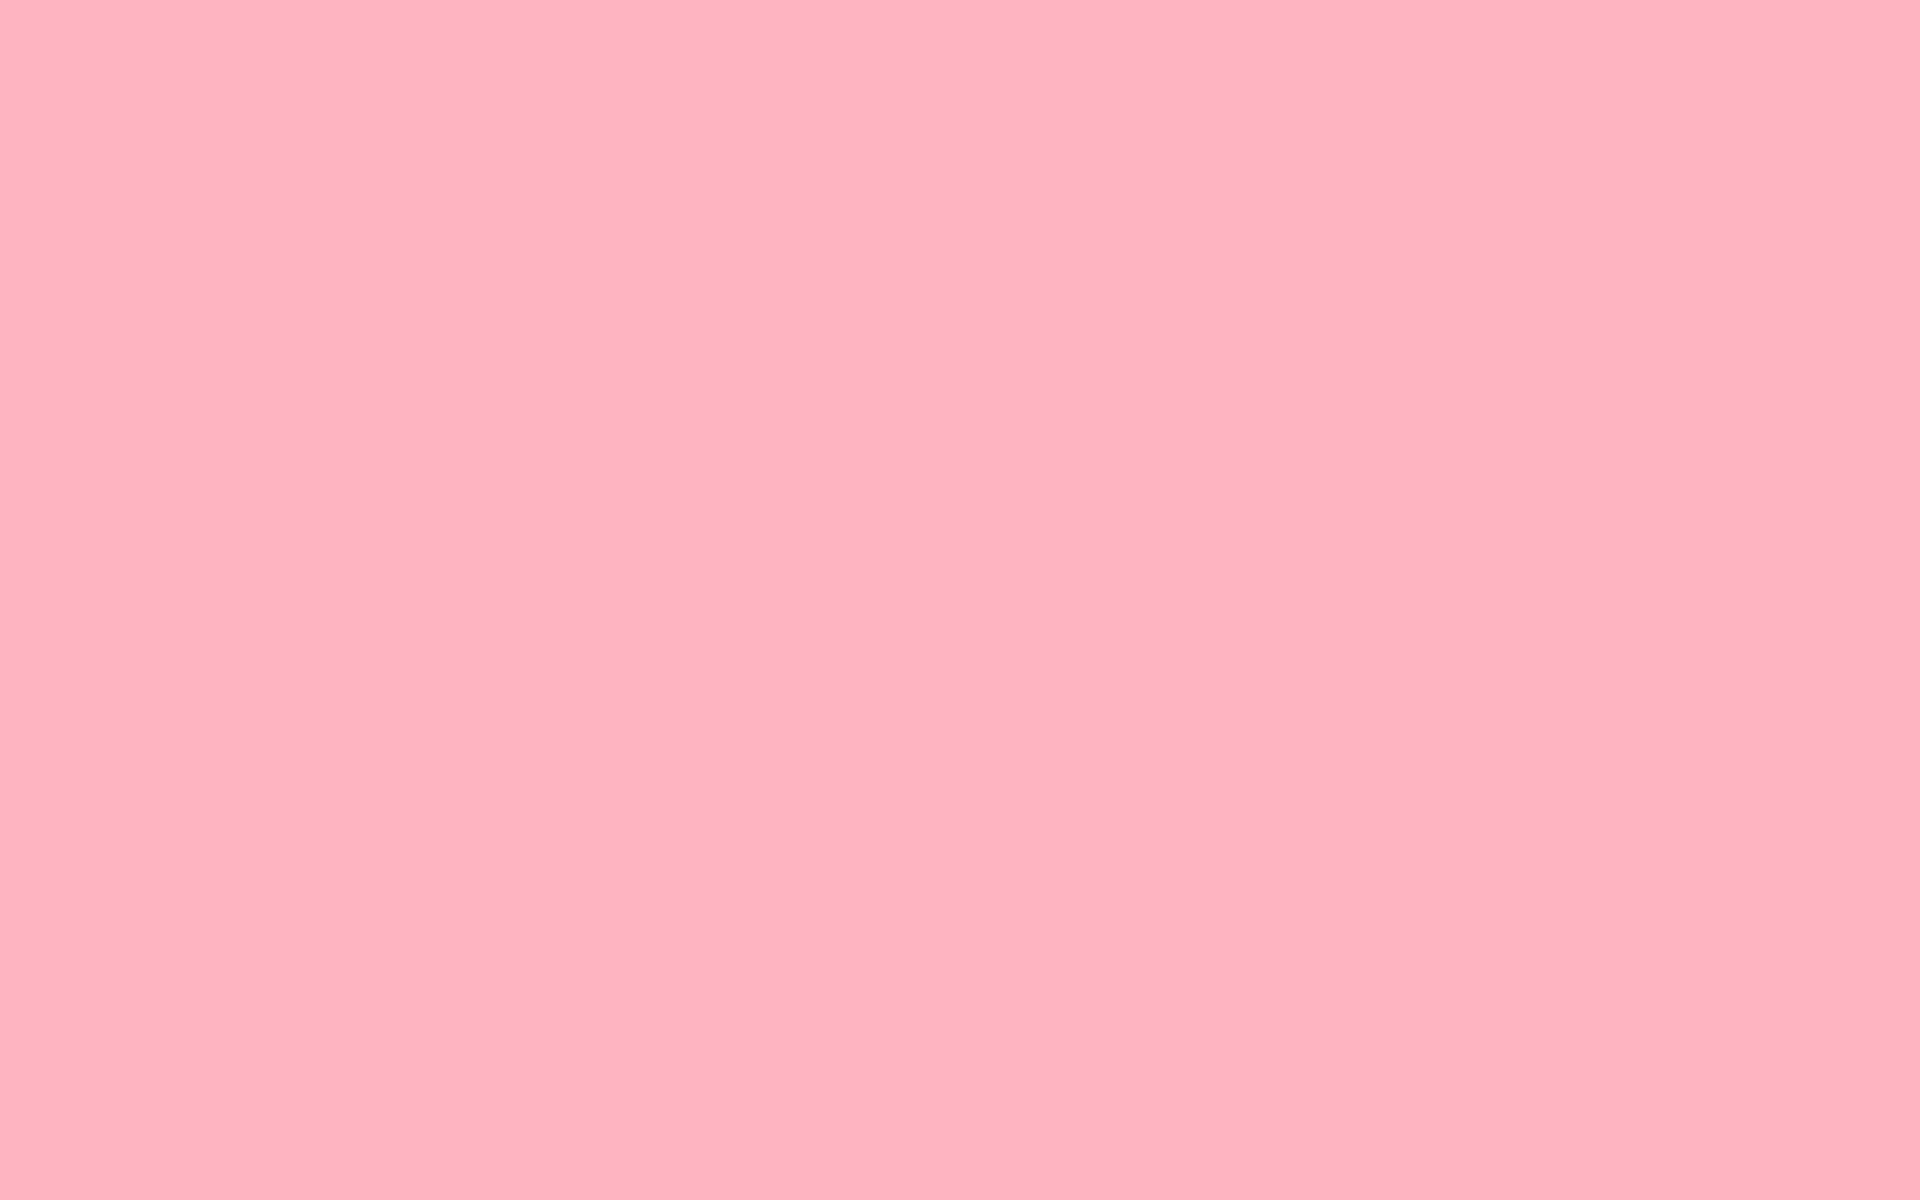 Soft Pink 2880 X 1800 Wallpaper